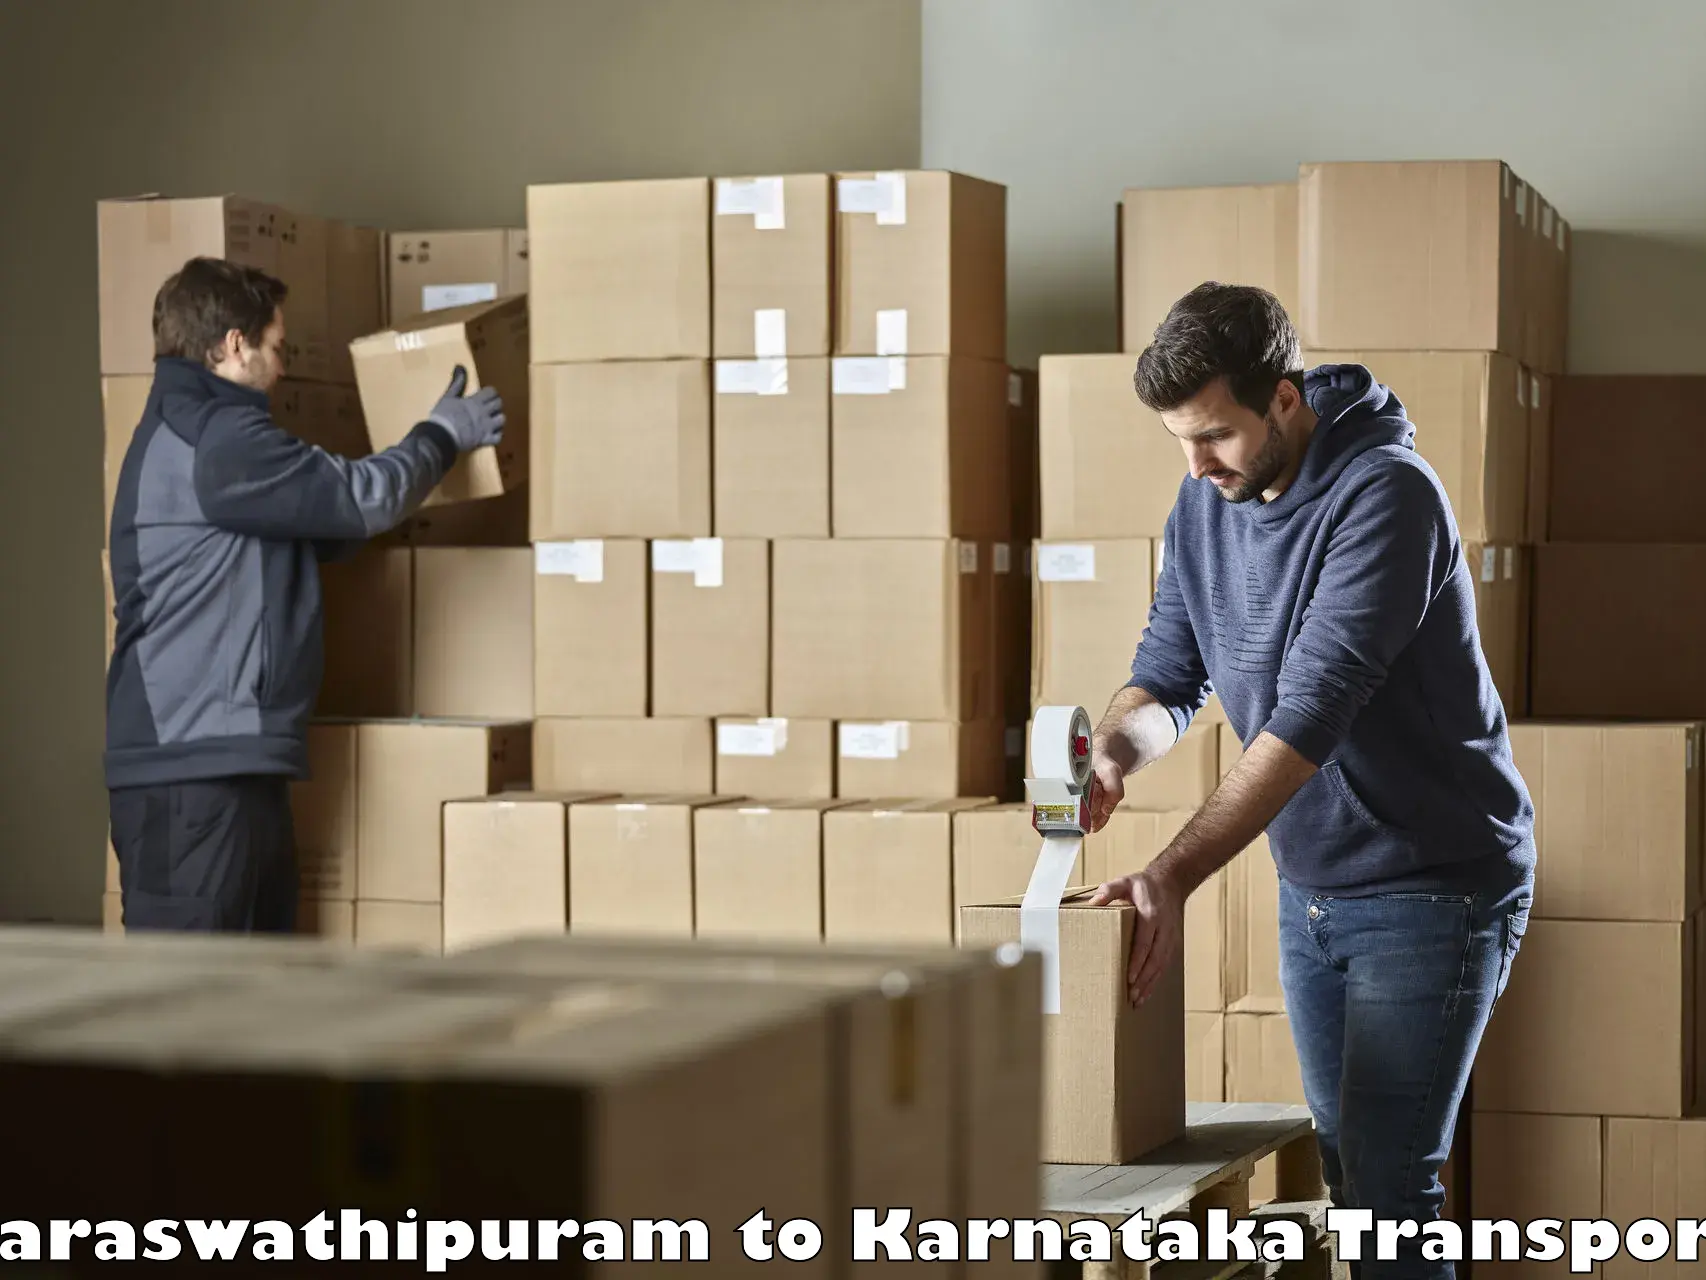 Commercial transport service Saraswathipuram to Maddur